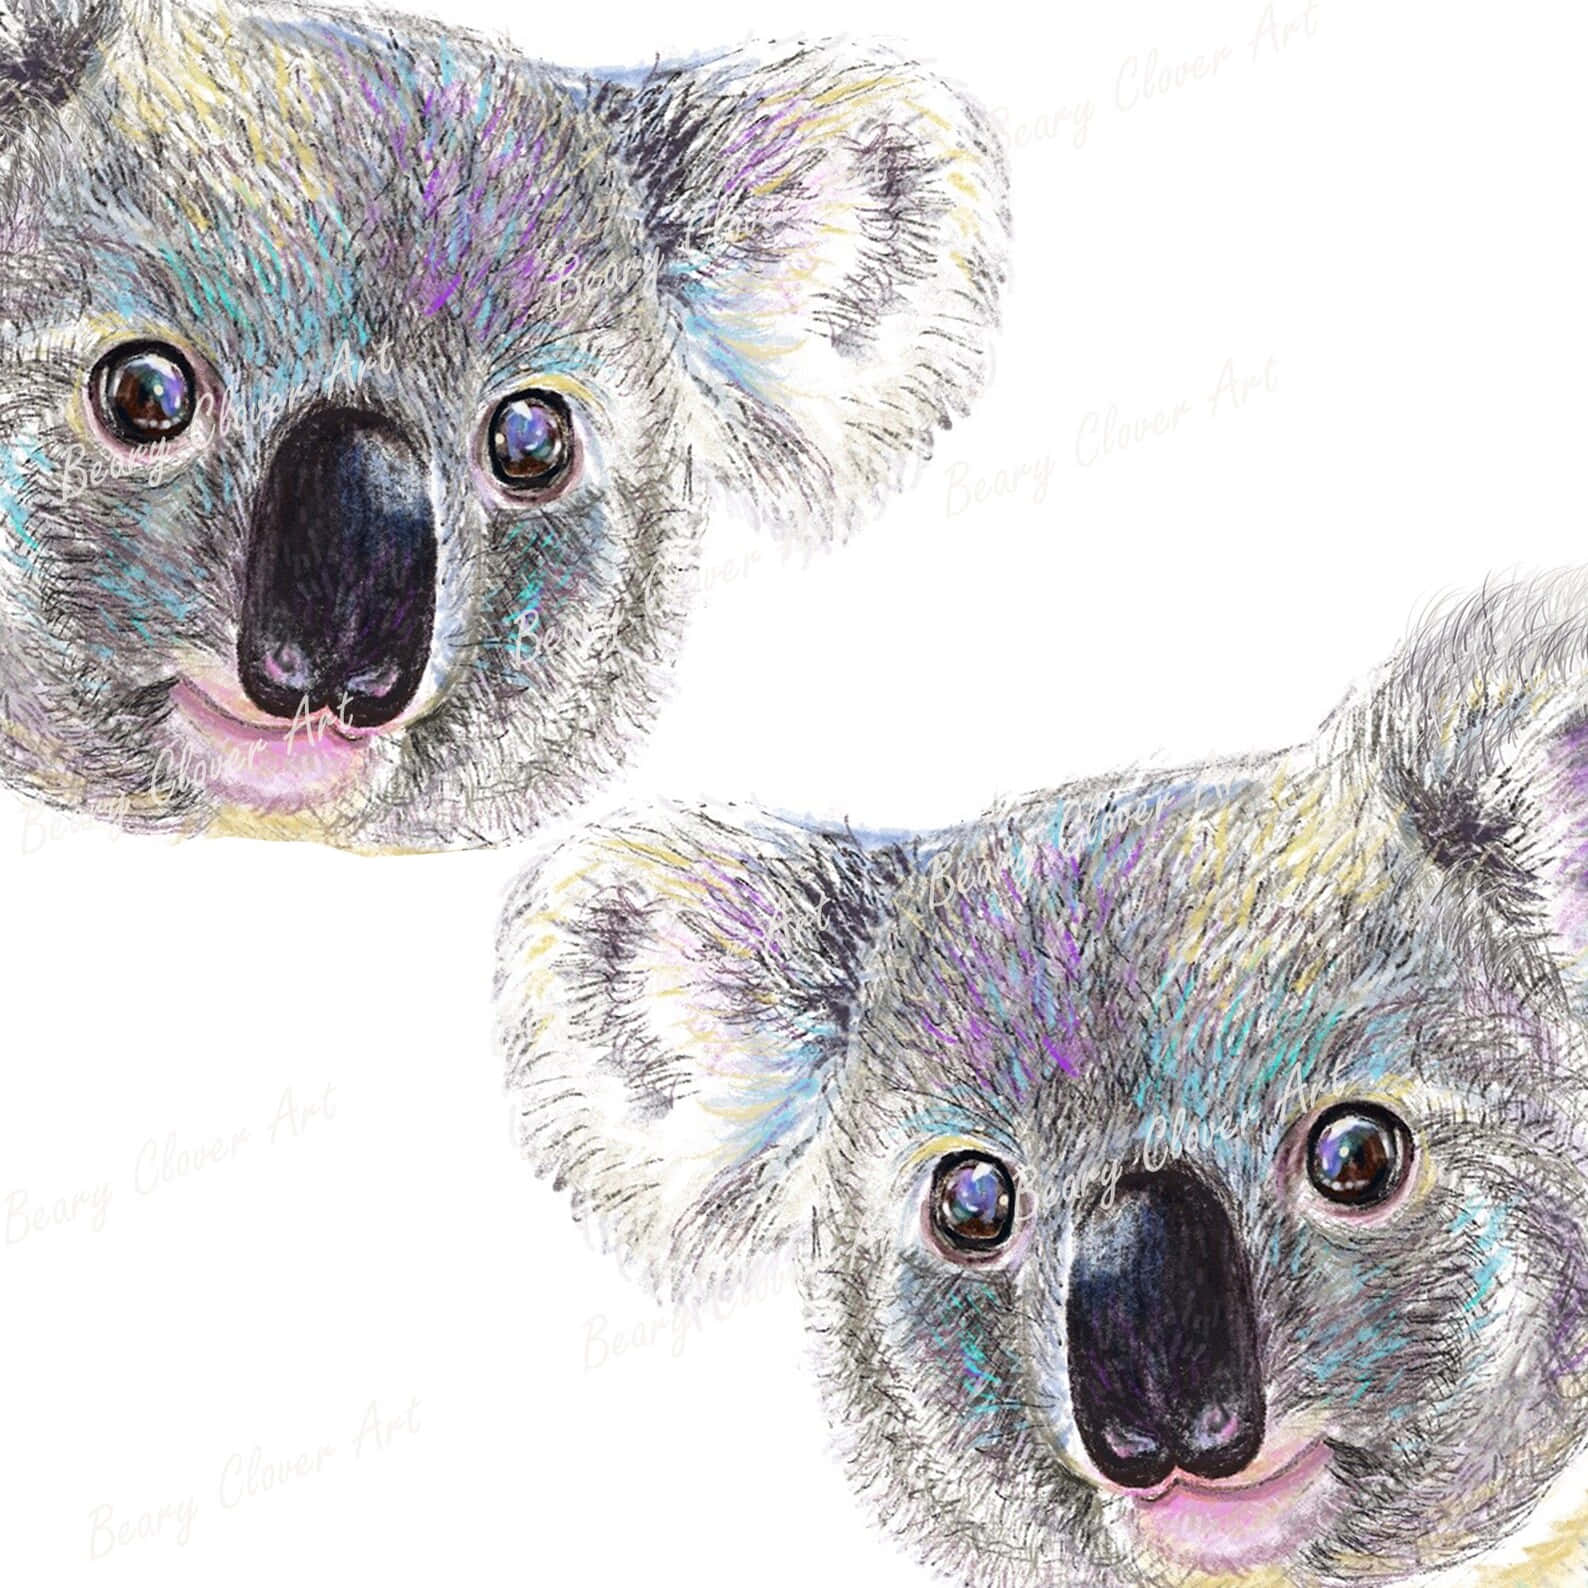 Etnærbillede Af En Nysgerrig Koala, Der Sidder På En Eukalyptustræ.